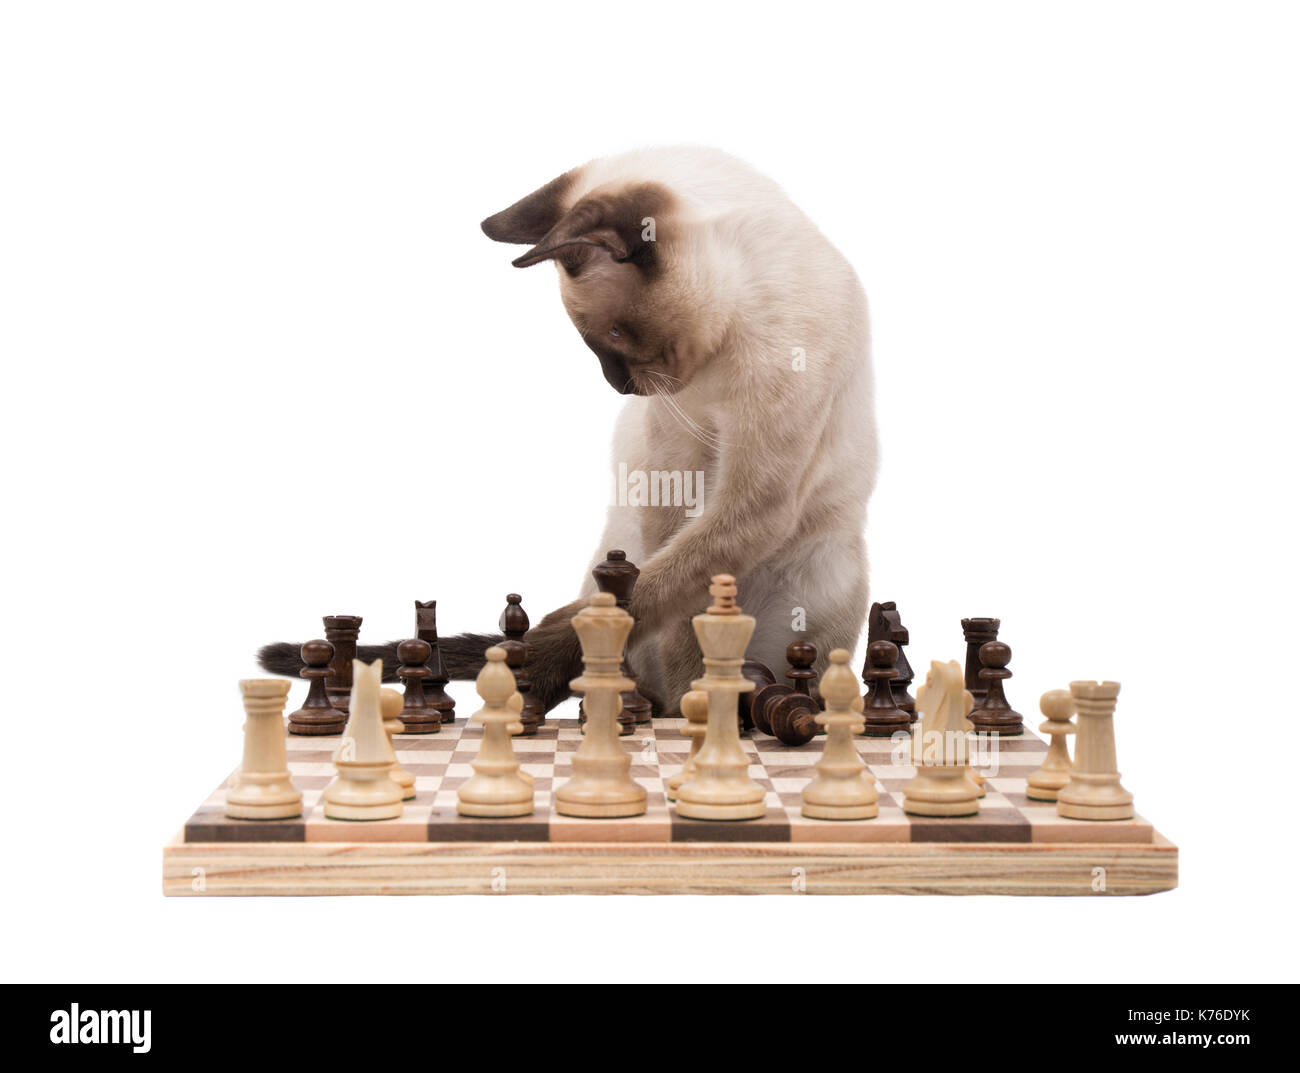 Chaton siamois déménagement pièces des échecs, on white Banque D'Images